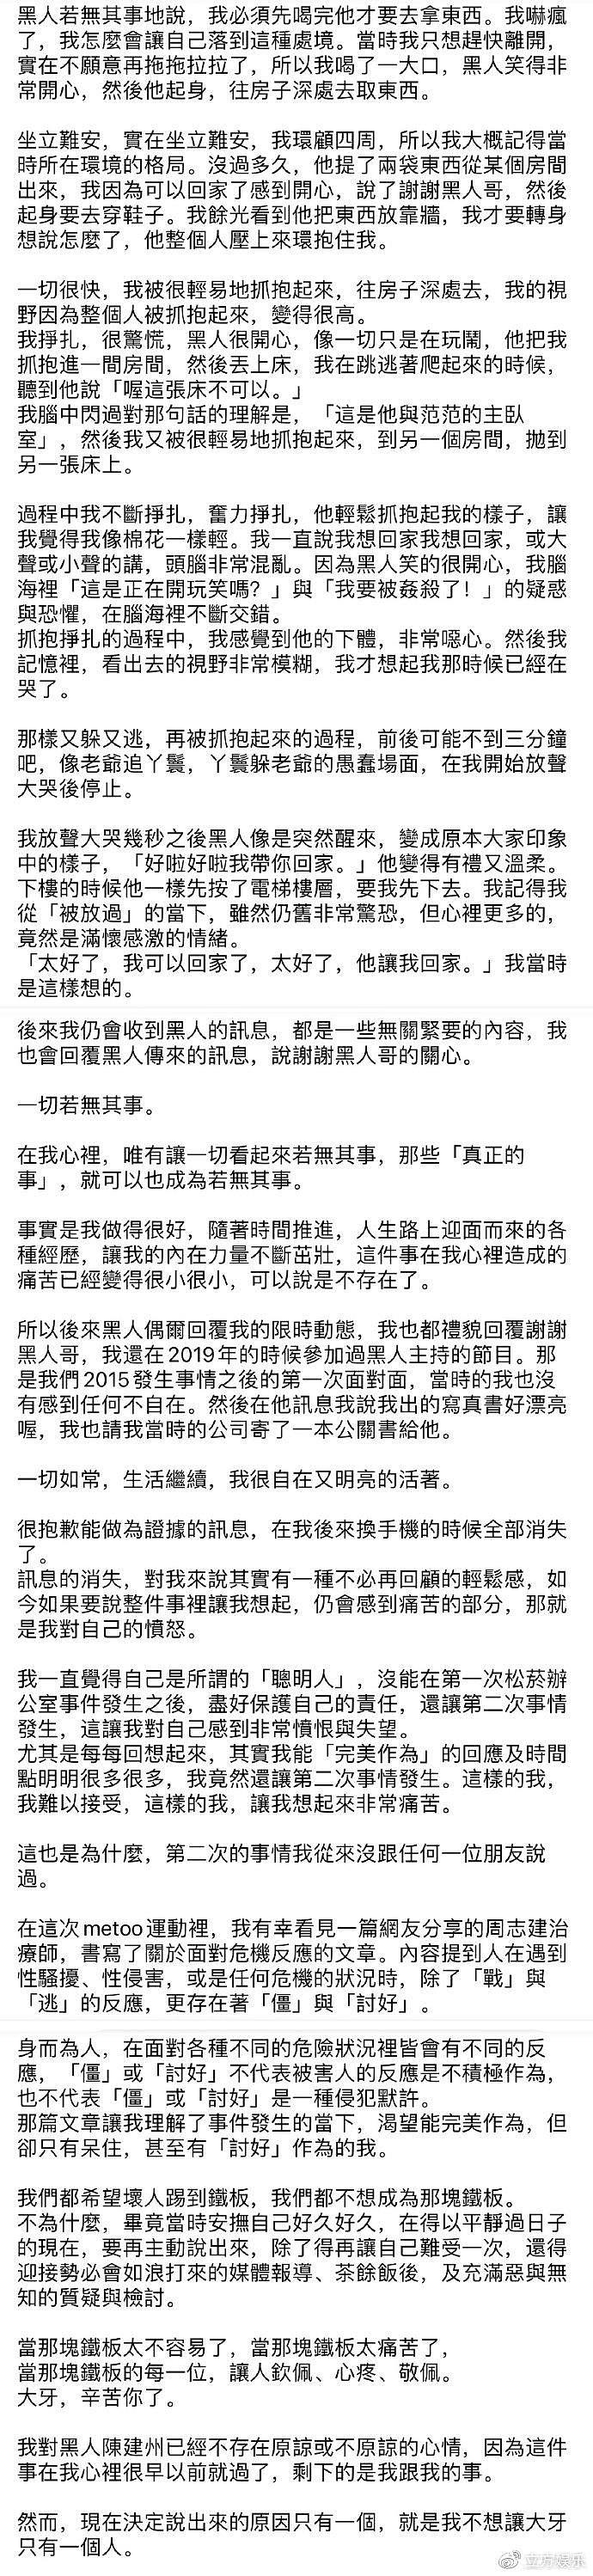 陈建州回应郭源元曝其性骚扰 称不再回应莫须有的指控 - 4